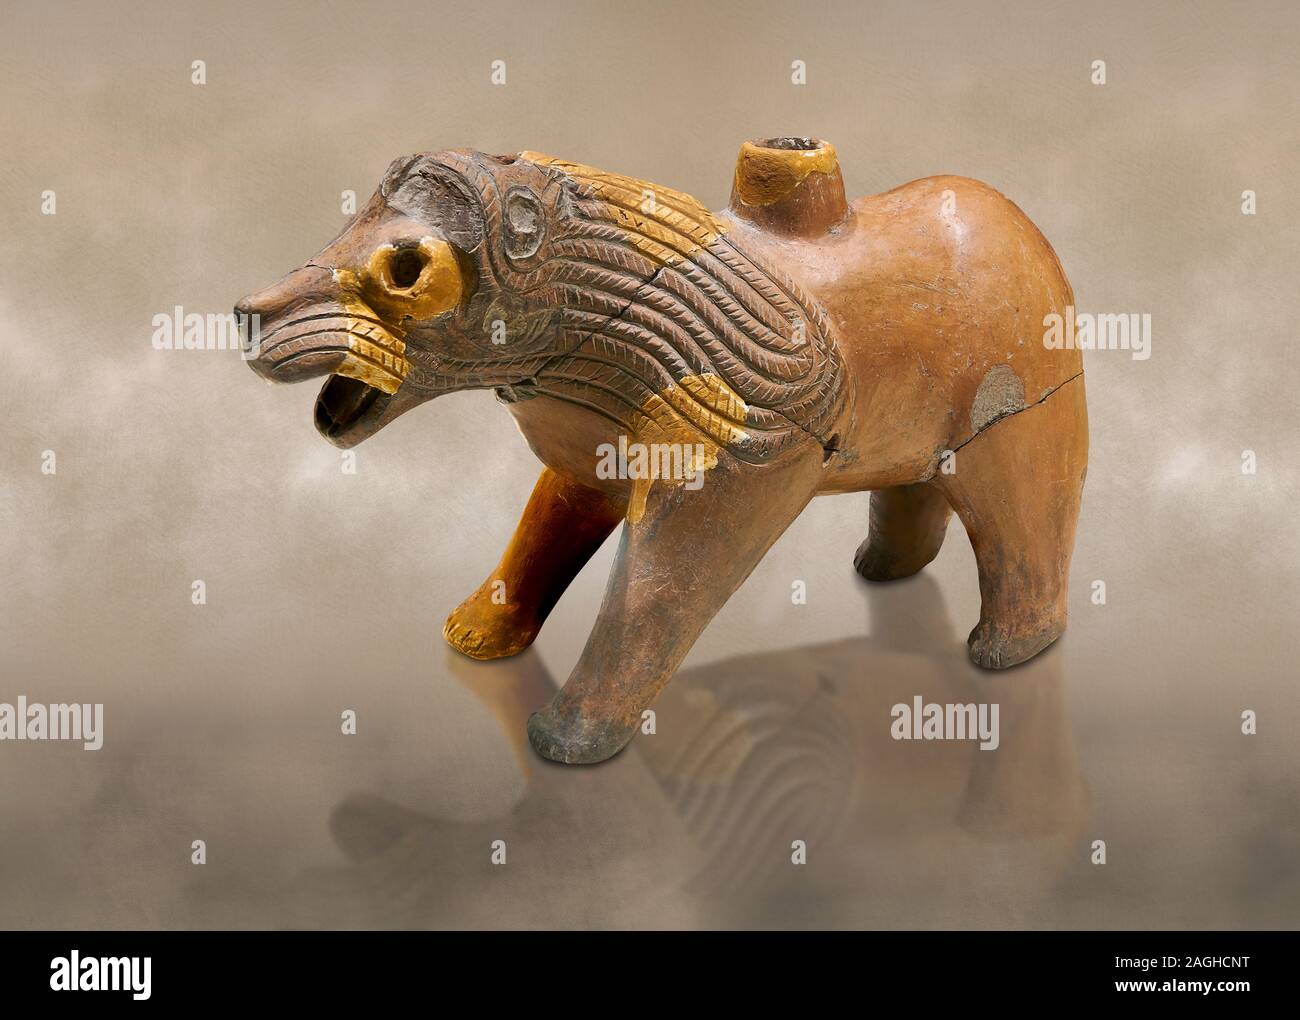 Terre cuite en forme de lion Hittite navire rituel - 16ème siècle BC - Hattusa ( Bogazkoy ) - Musée des civilisations anatoliennes, Ankara, Turquie Banque D'Images